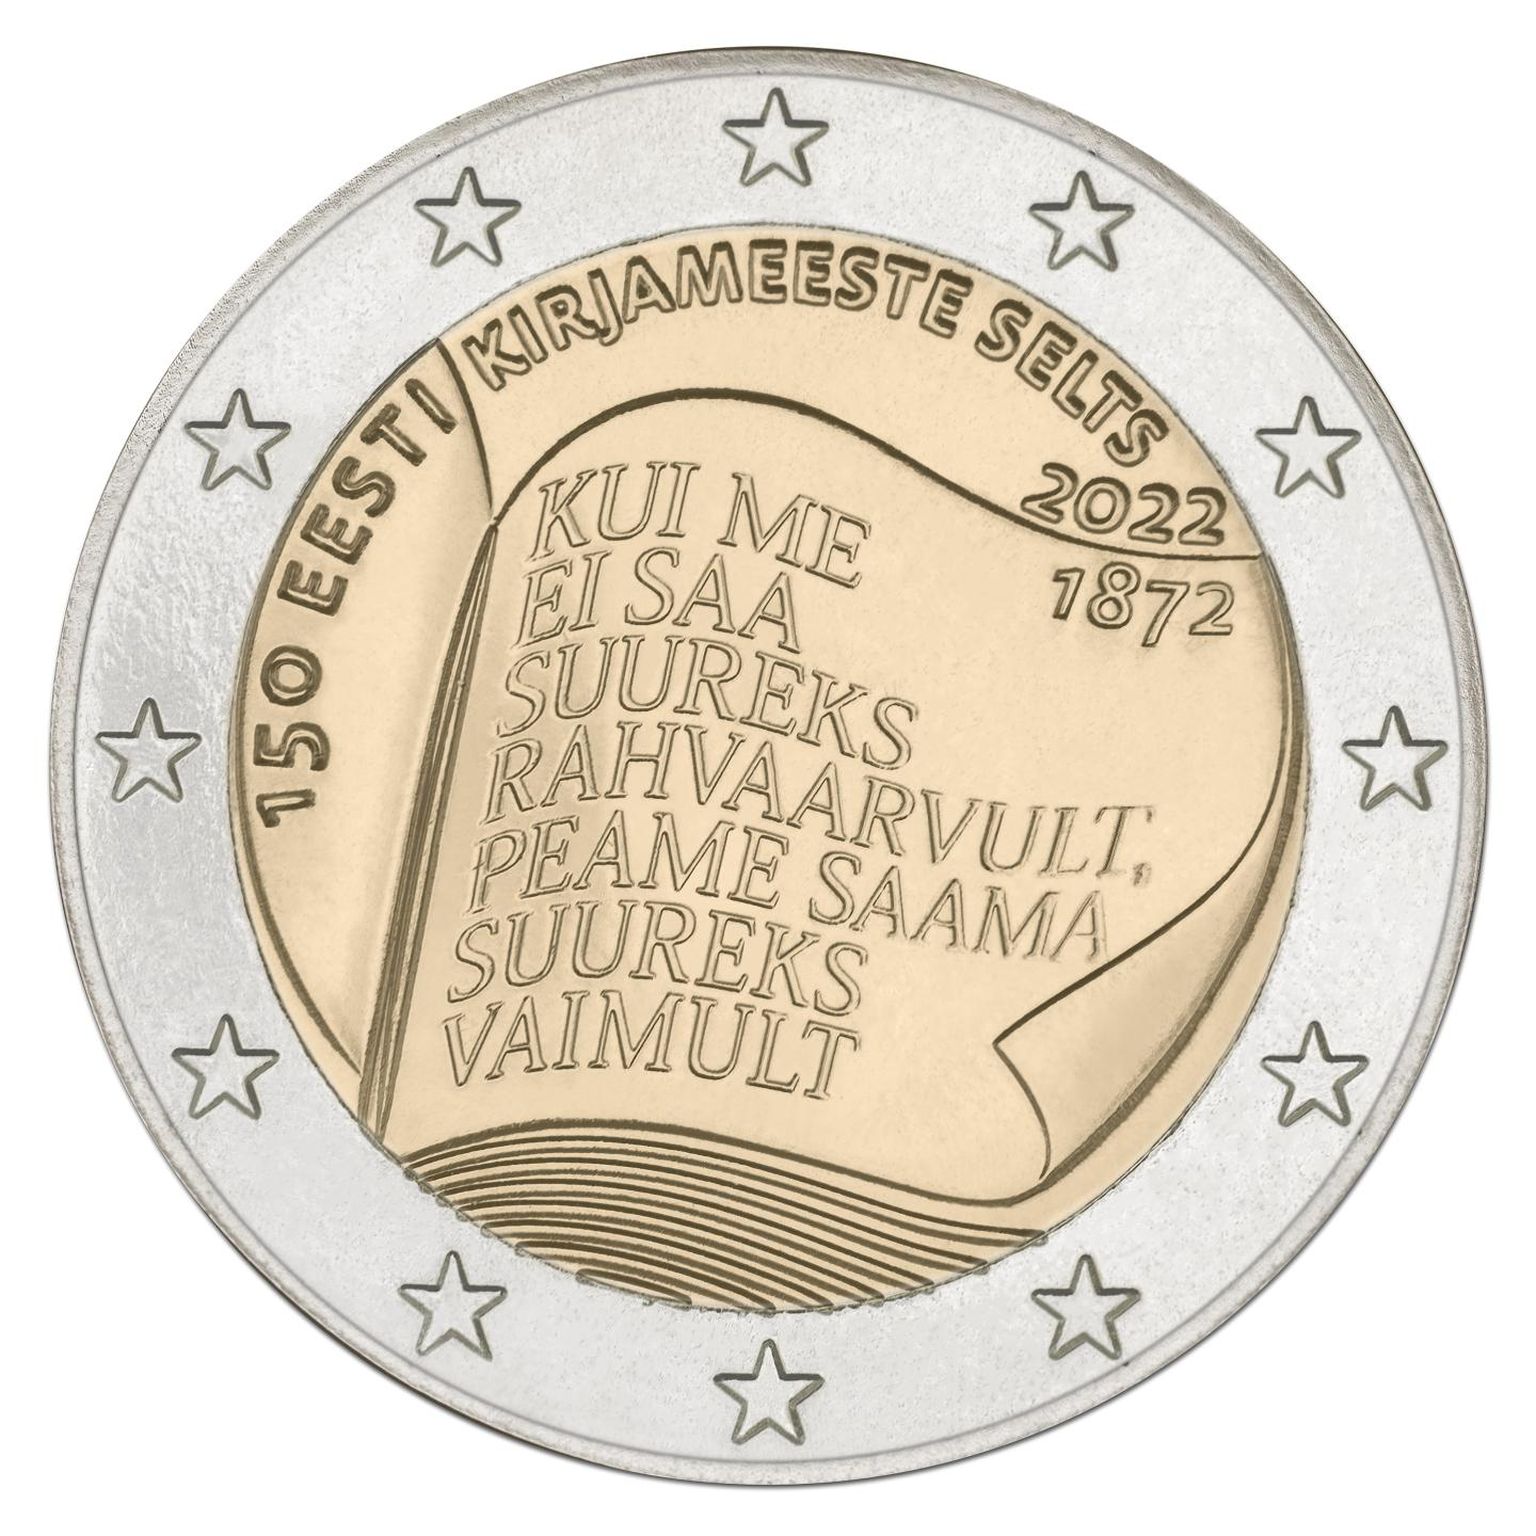 Kirjameeste seltsile pühendatud münt